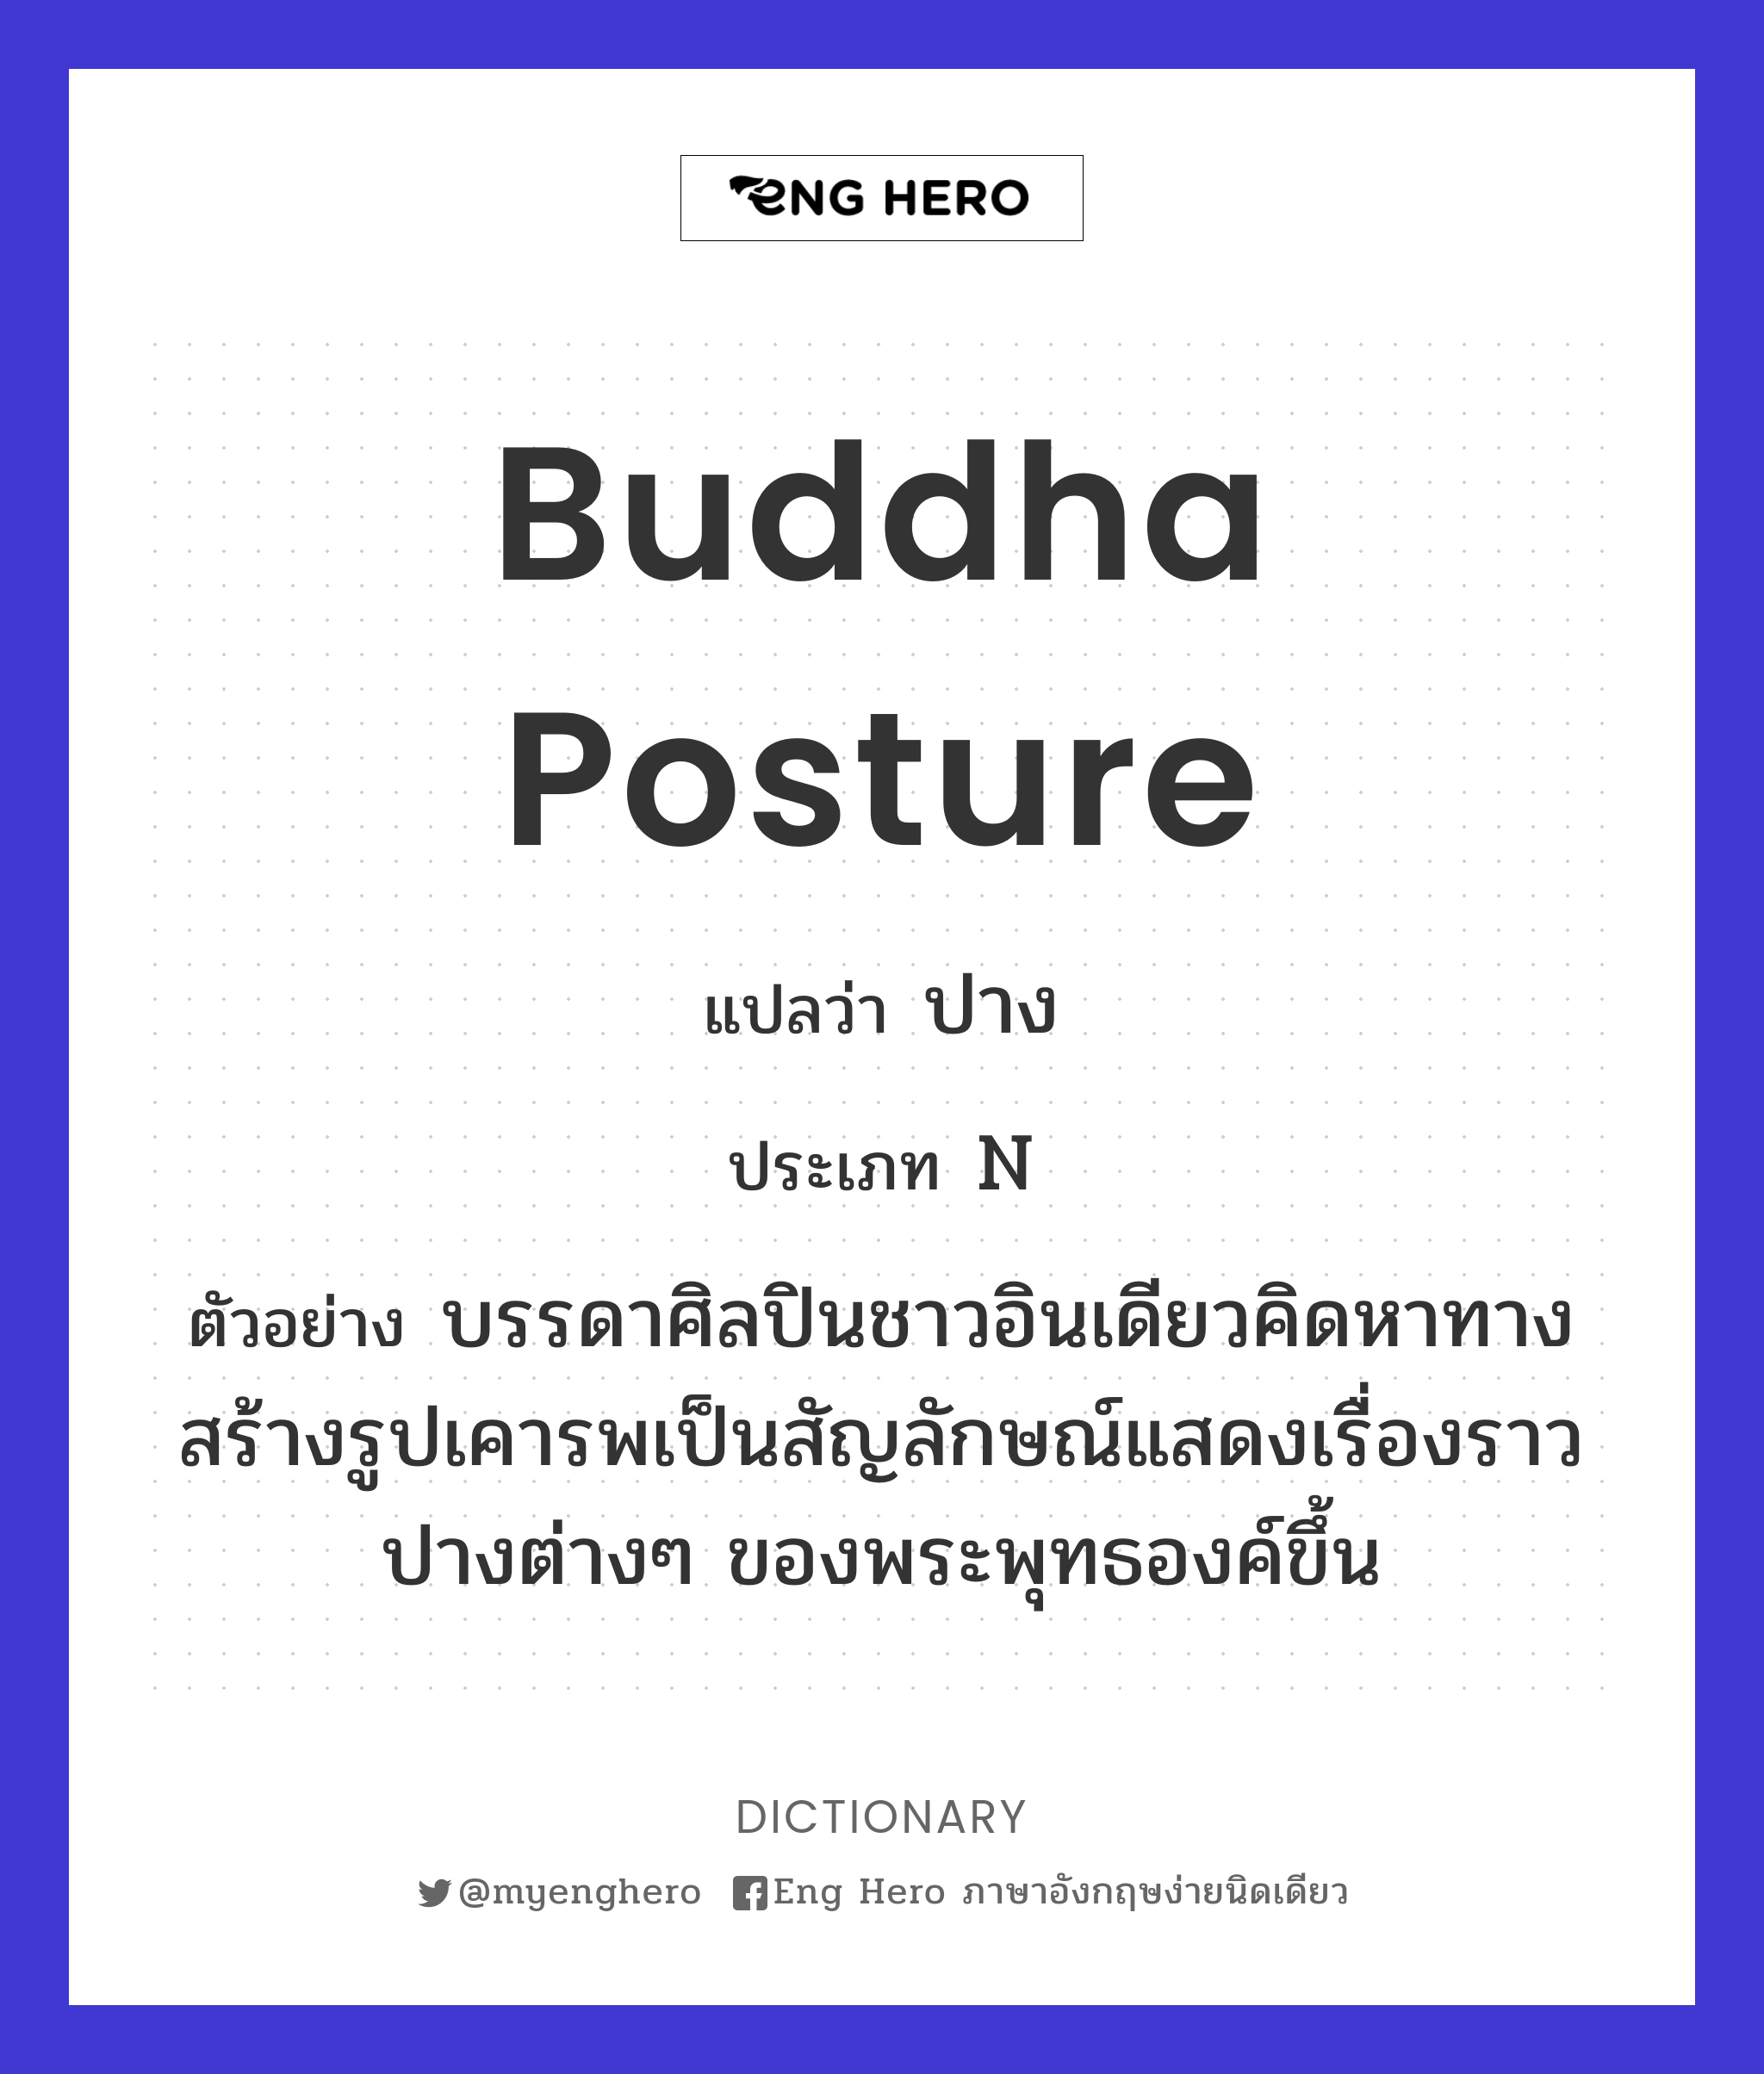 Buddha posture